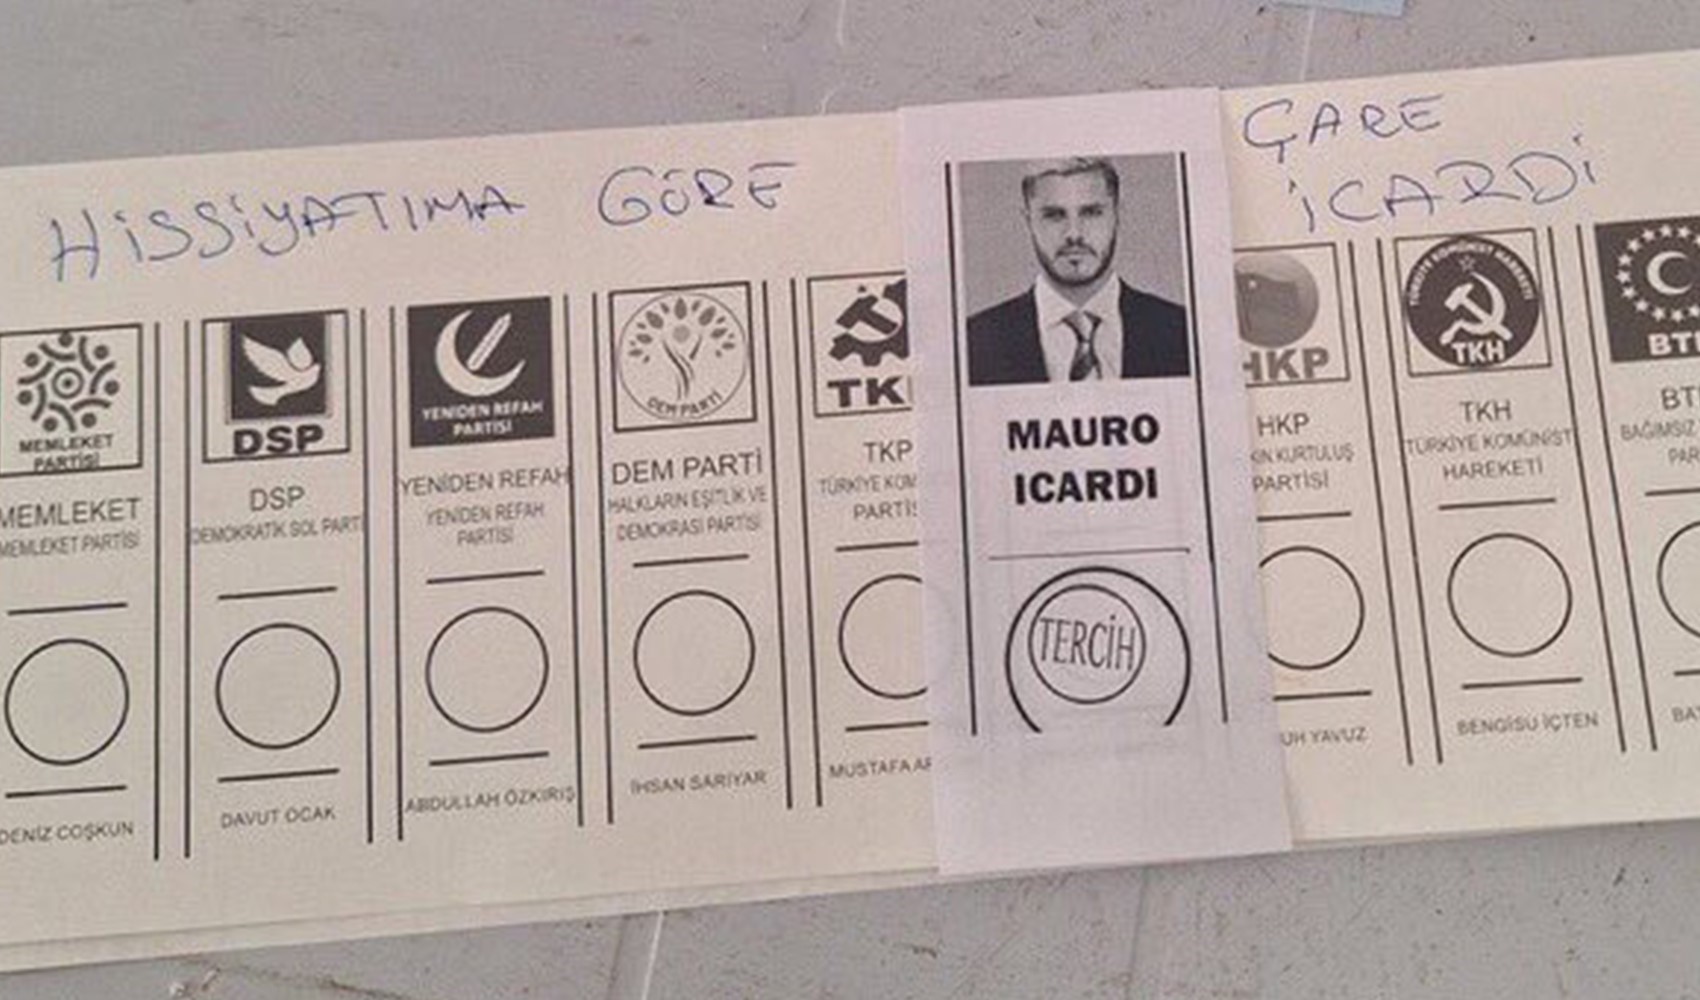 Galatasaray taraftarının paylaştığı oy pusulası tepki çekti: Hissiyatıma göre çare Icardi